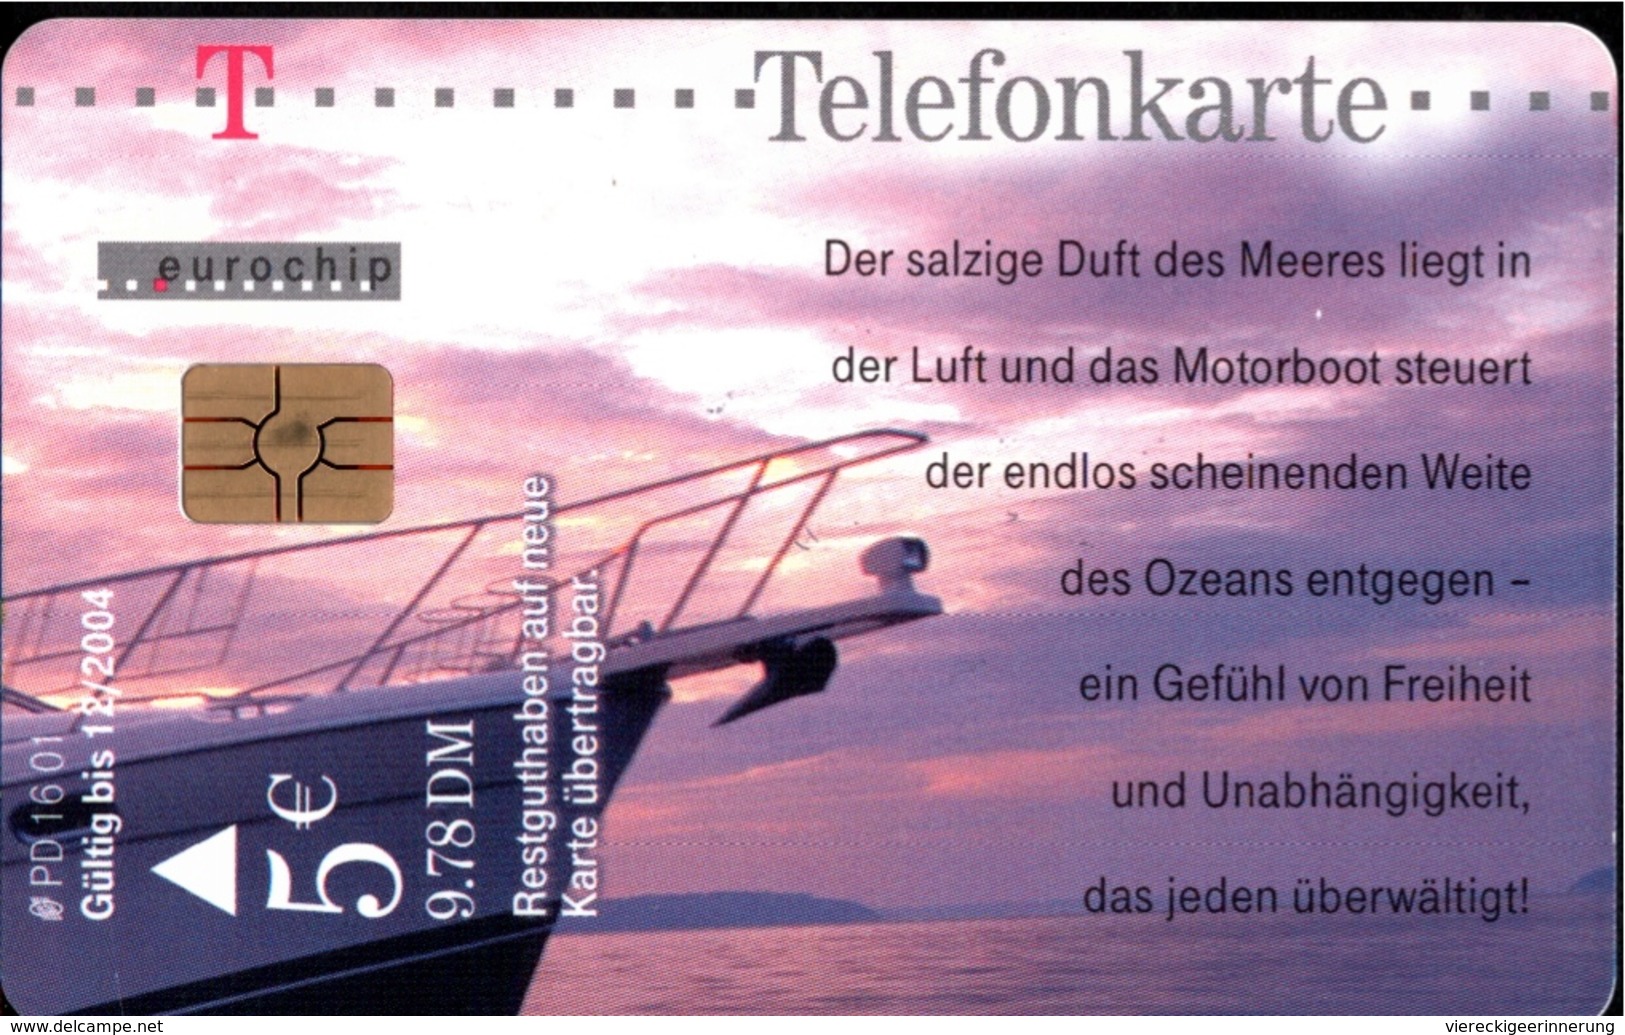 ! 5 € Telefonkarte, Telecarte, Phonecard, 2001, PD16, Germany, Motorboot, Motorboat - P & PD-Series: Schalterkarten Der Dt. Telekom